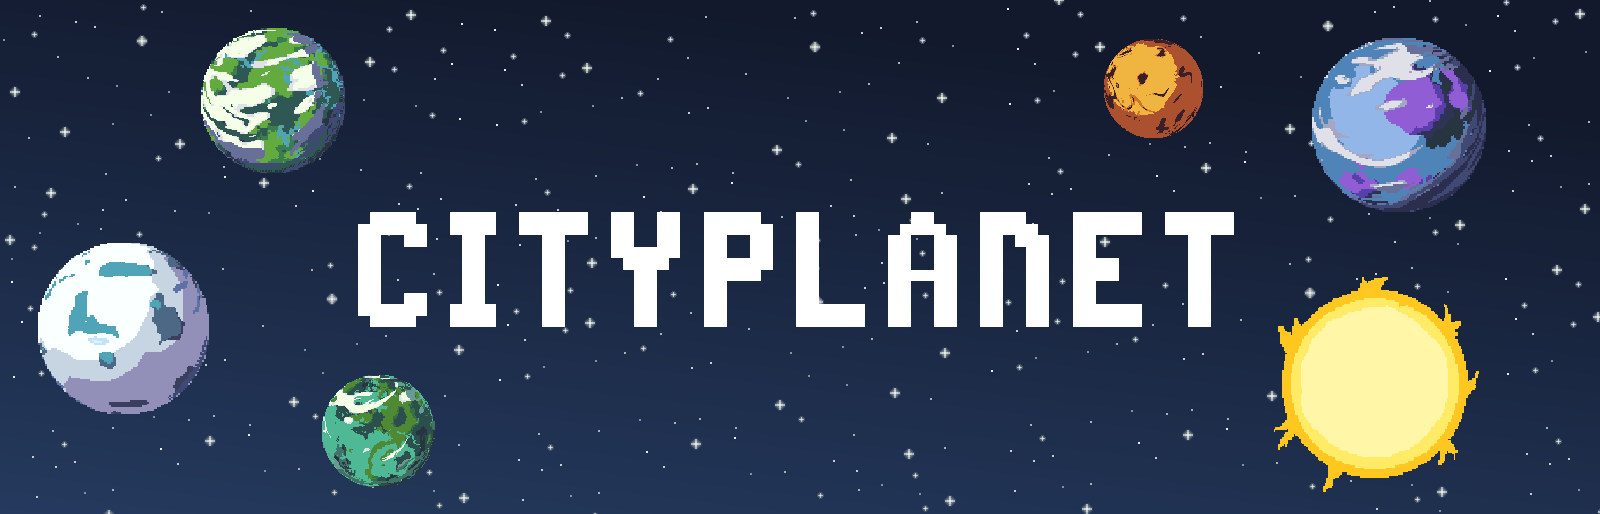 Cityplanet